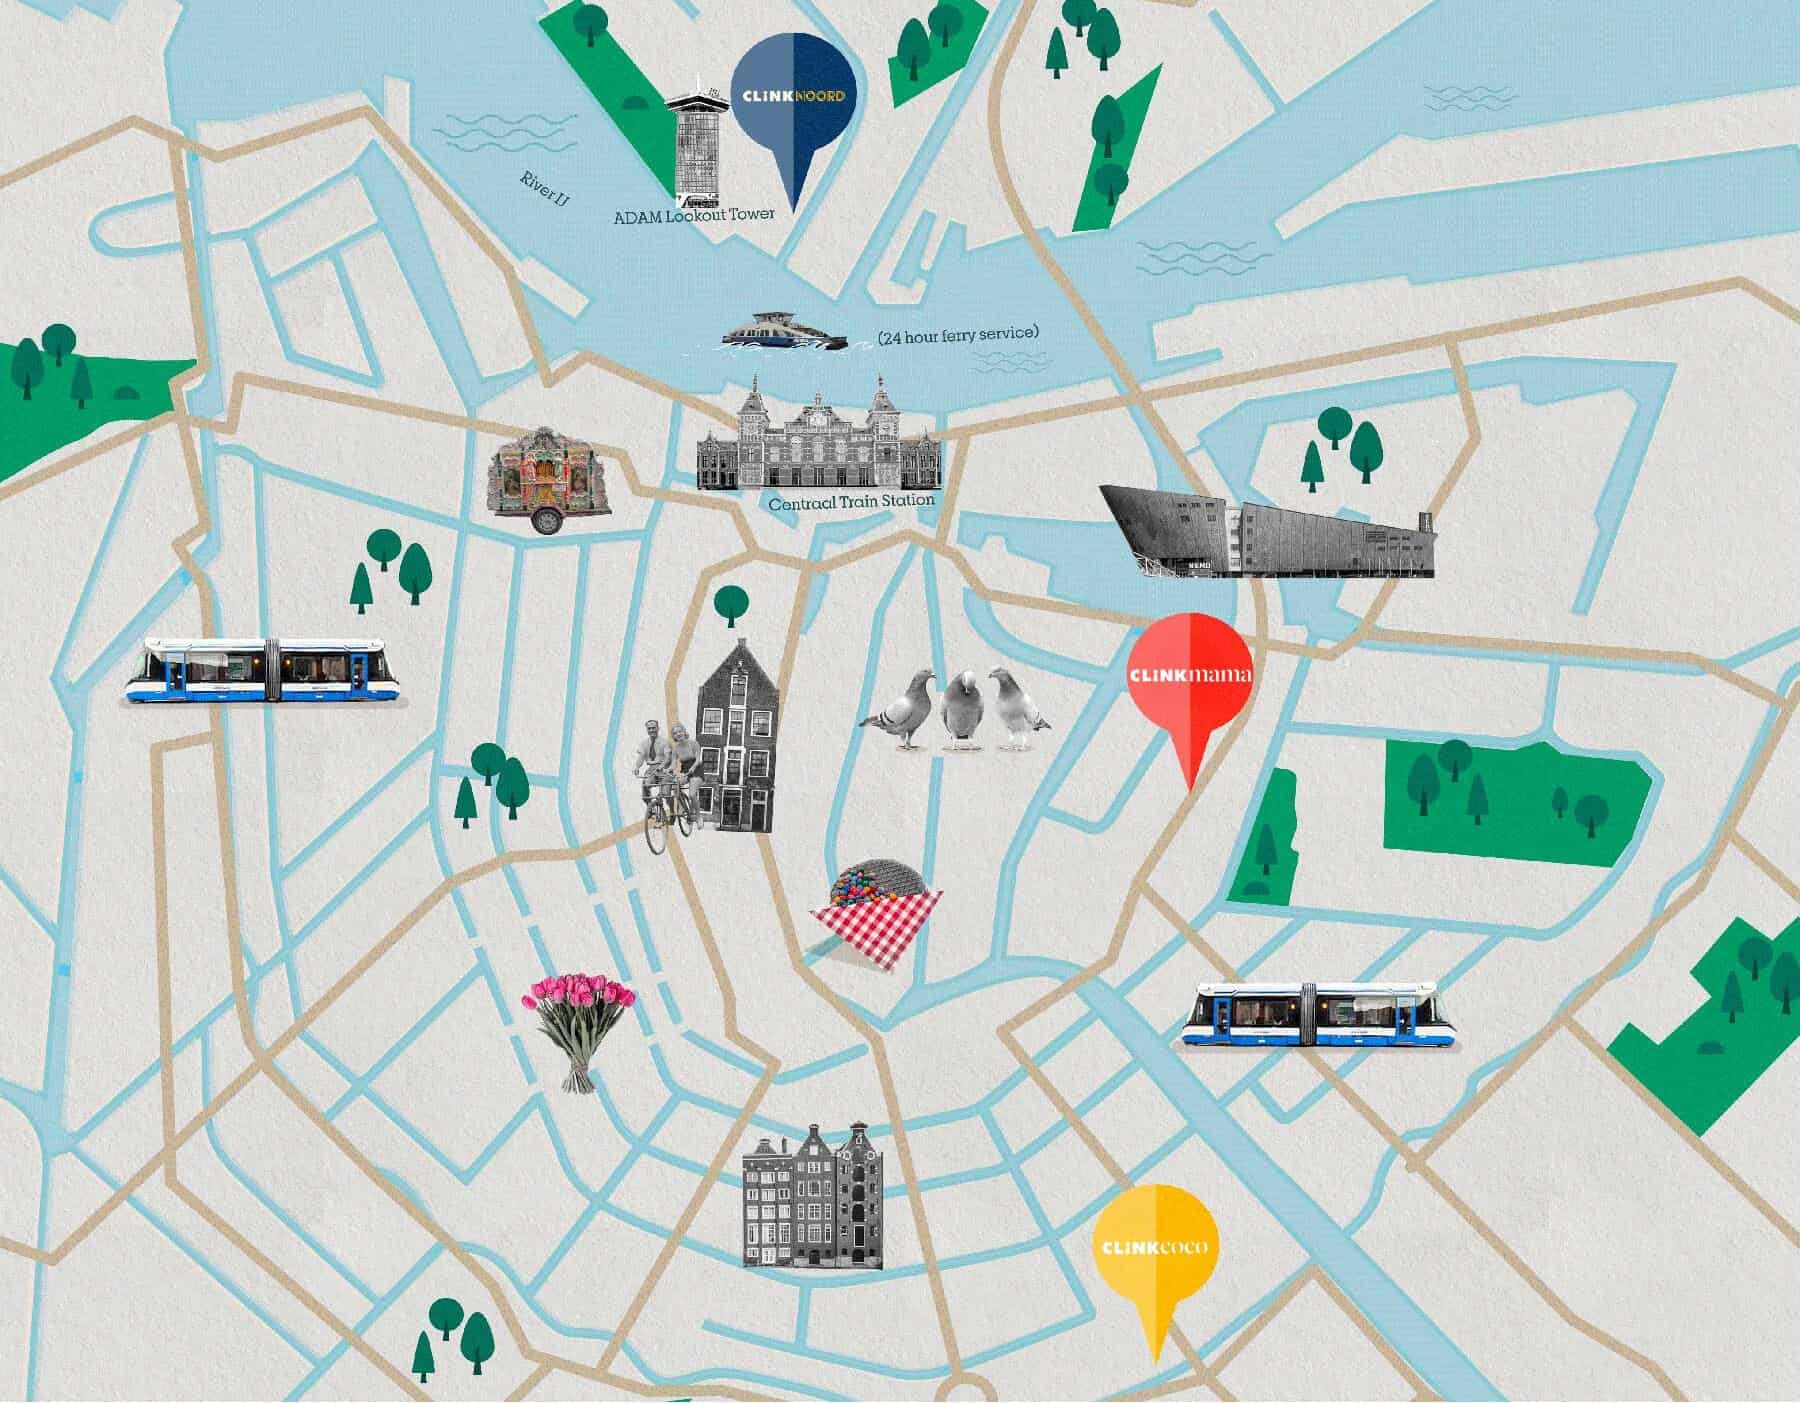 Plano de Ámsterdam con ClinkNOORD, ClinkMama, ClinkCoco y atracciones turísticas